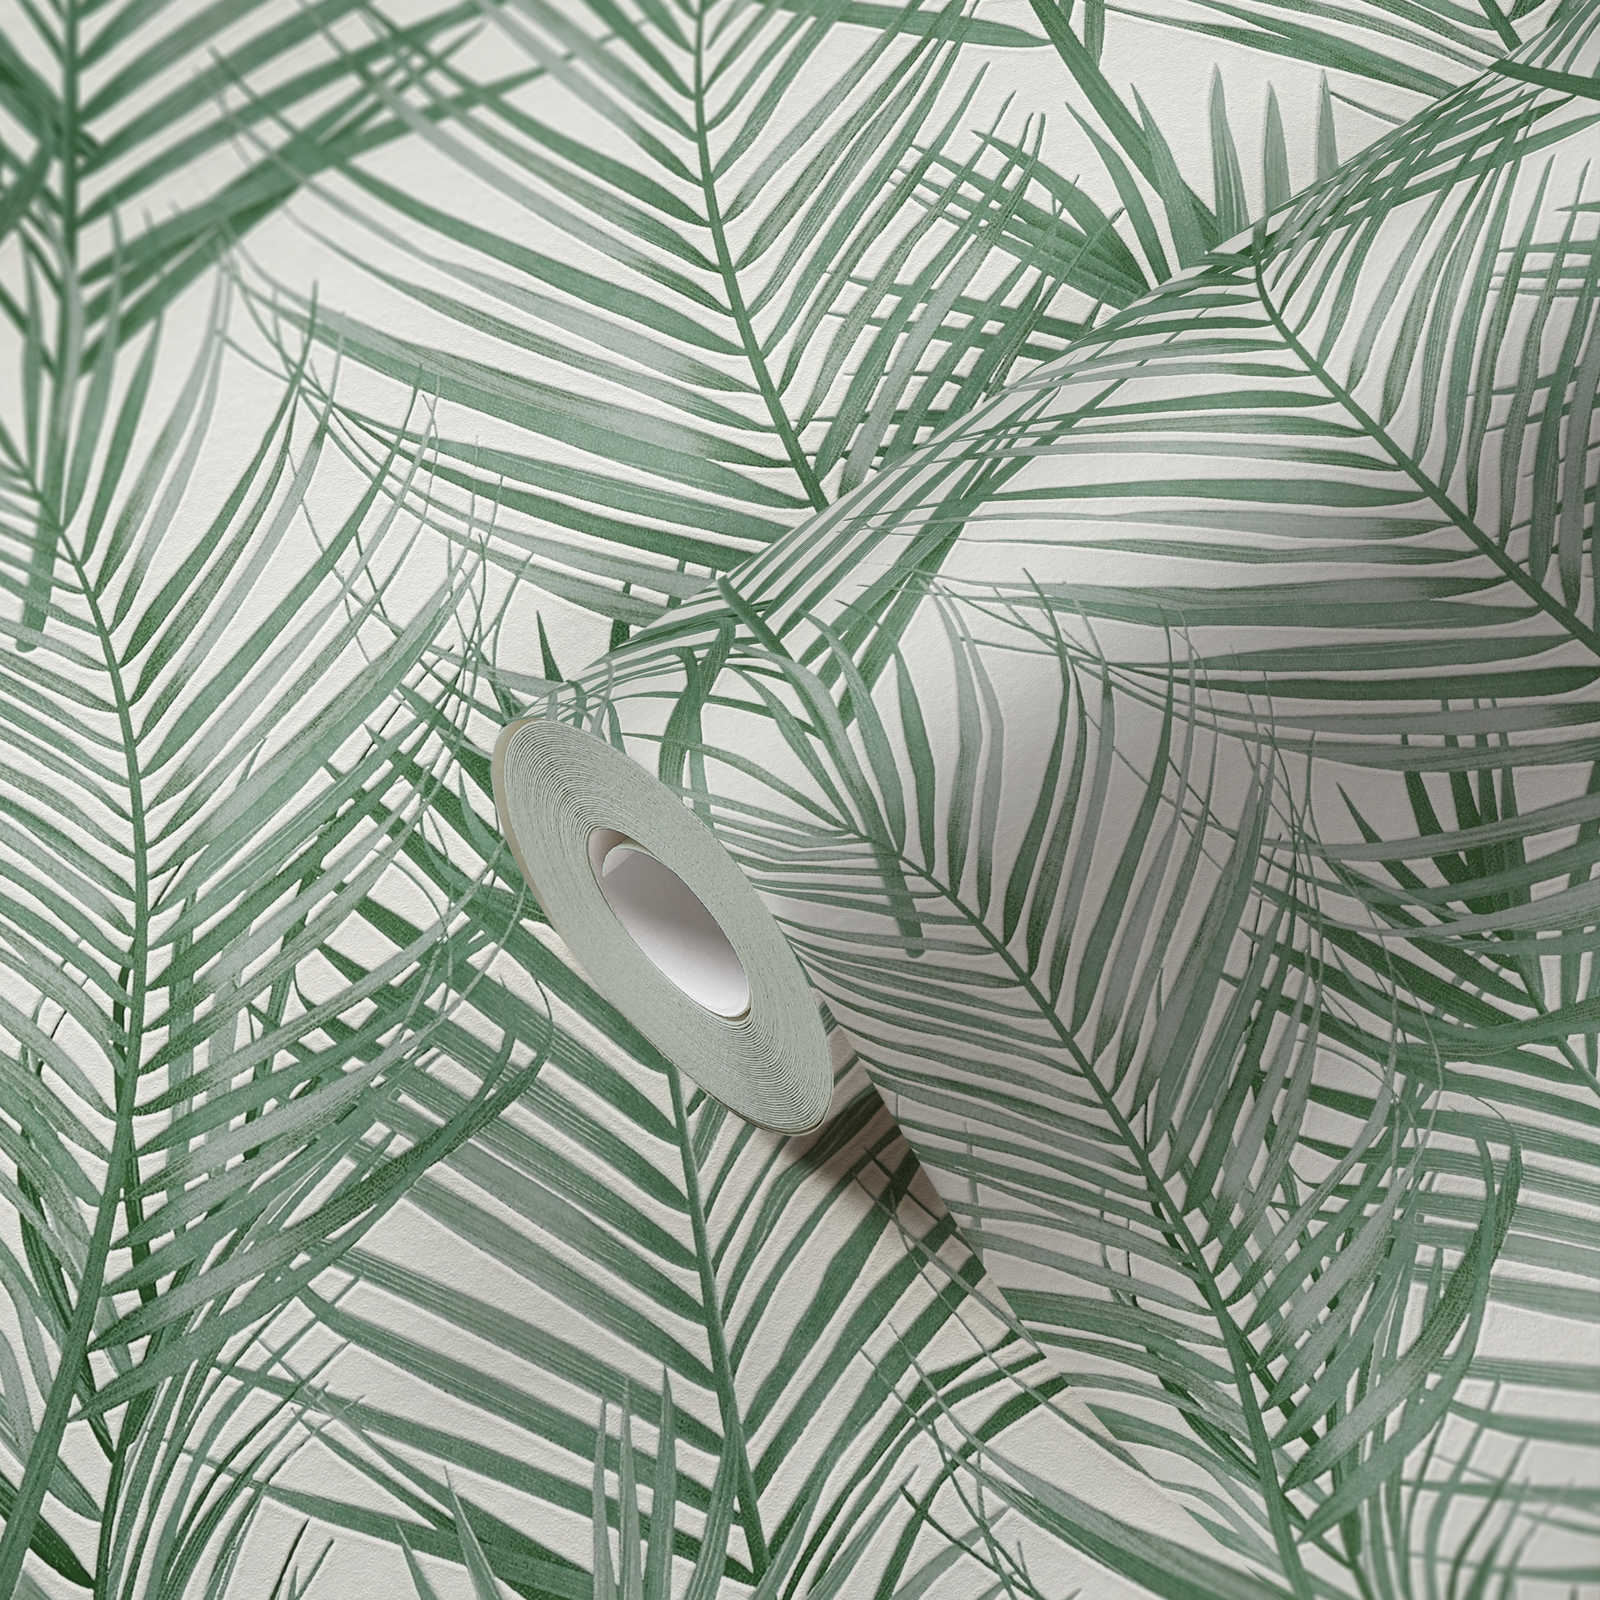             Papel pintado no tejido con motivo de palmeras grandes - verde, blanco
        